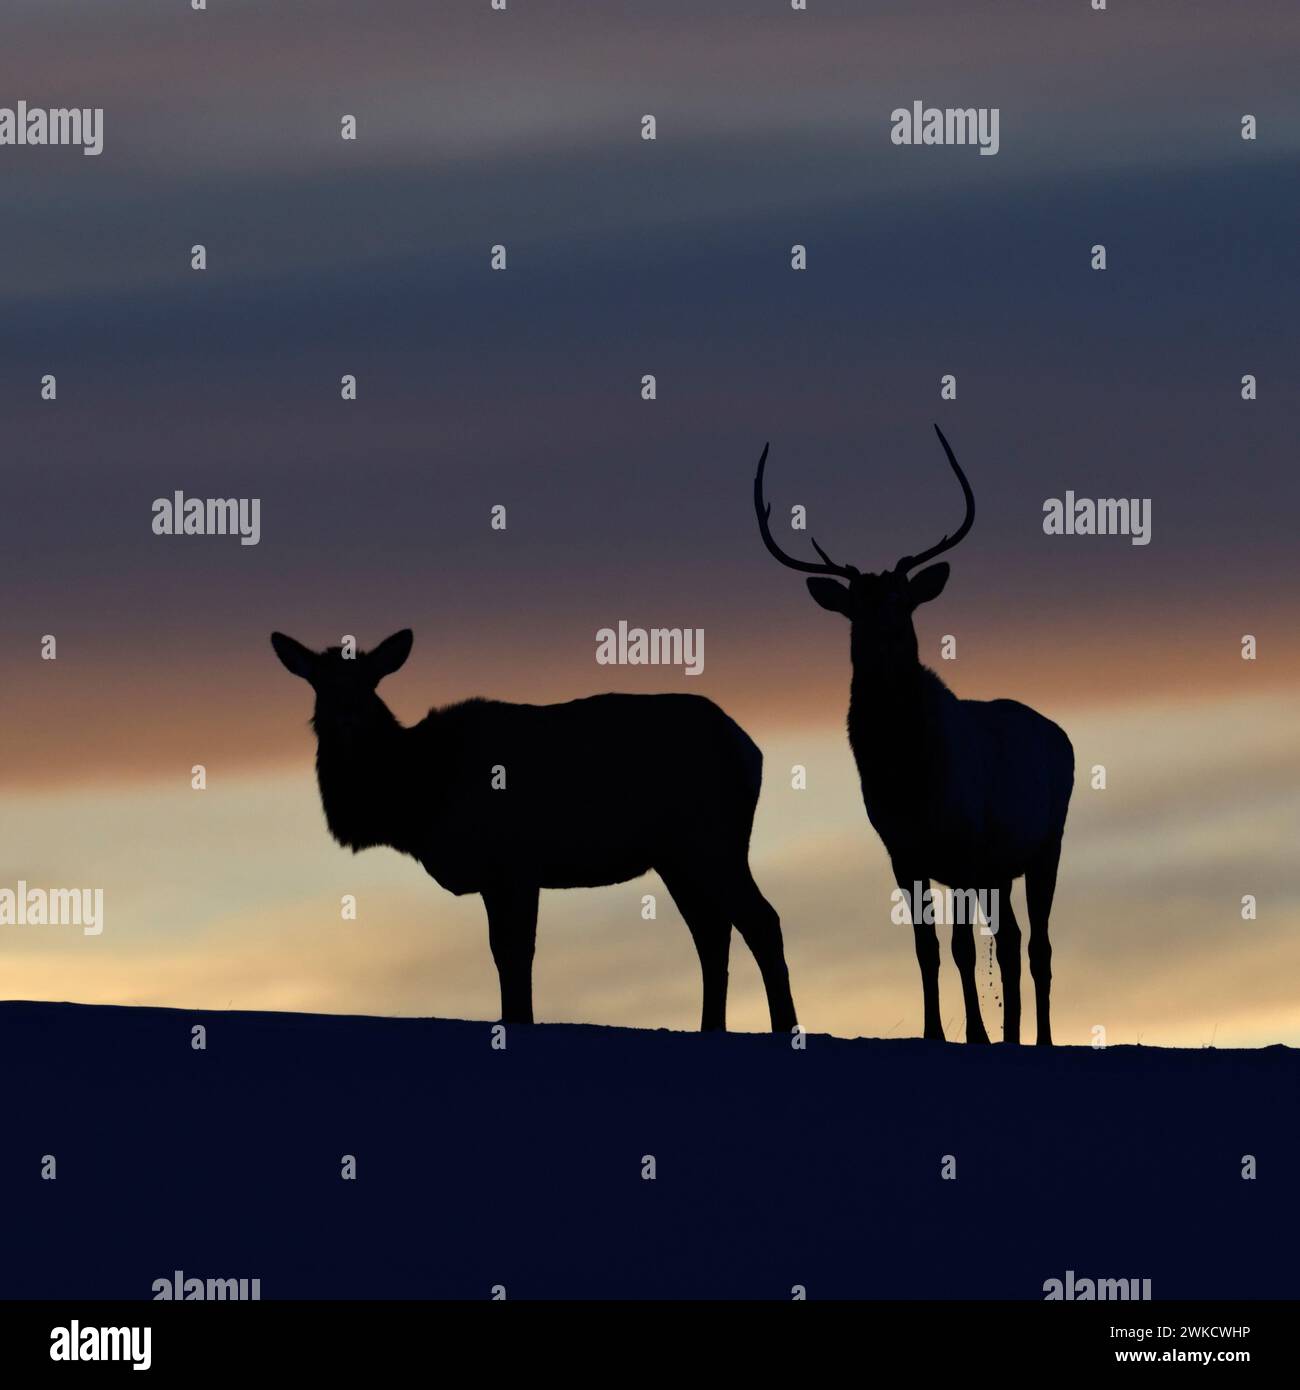 Elks / Wapitis ( Cervus canadensis ), paire en hiver, debout sur une petite colline, à genoux, silhouetté contre un beau ciel du soir, prise de vue en contre-jour, Yellowst Banque D'Images